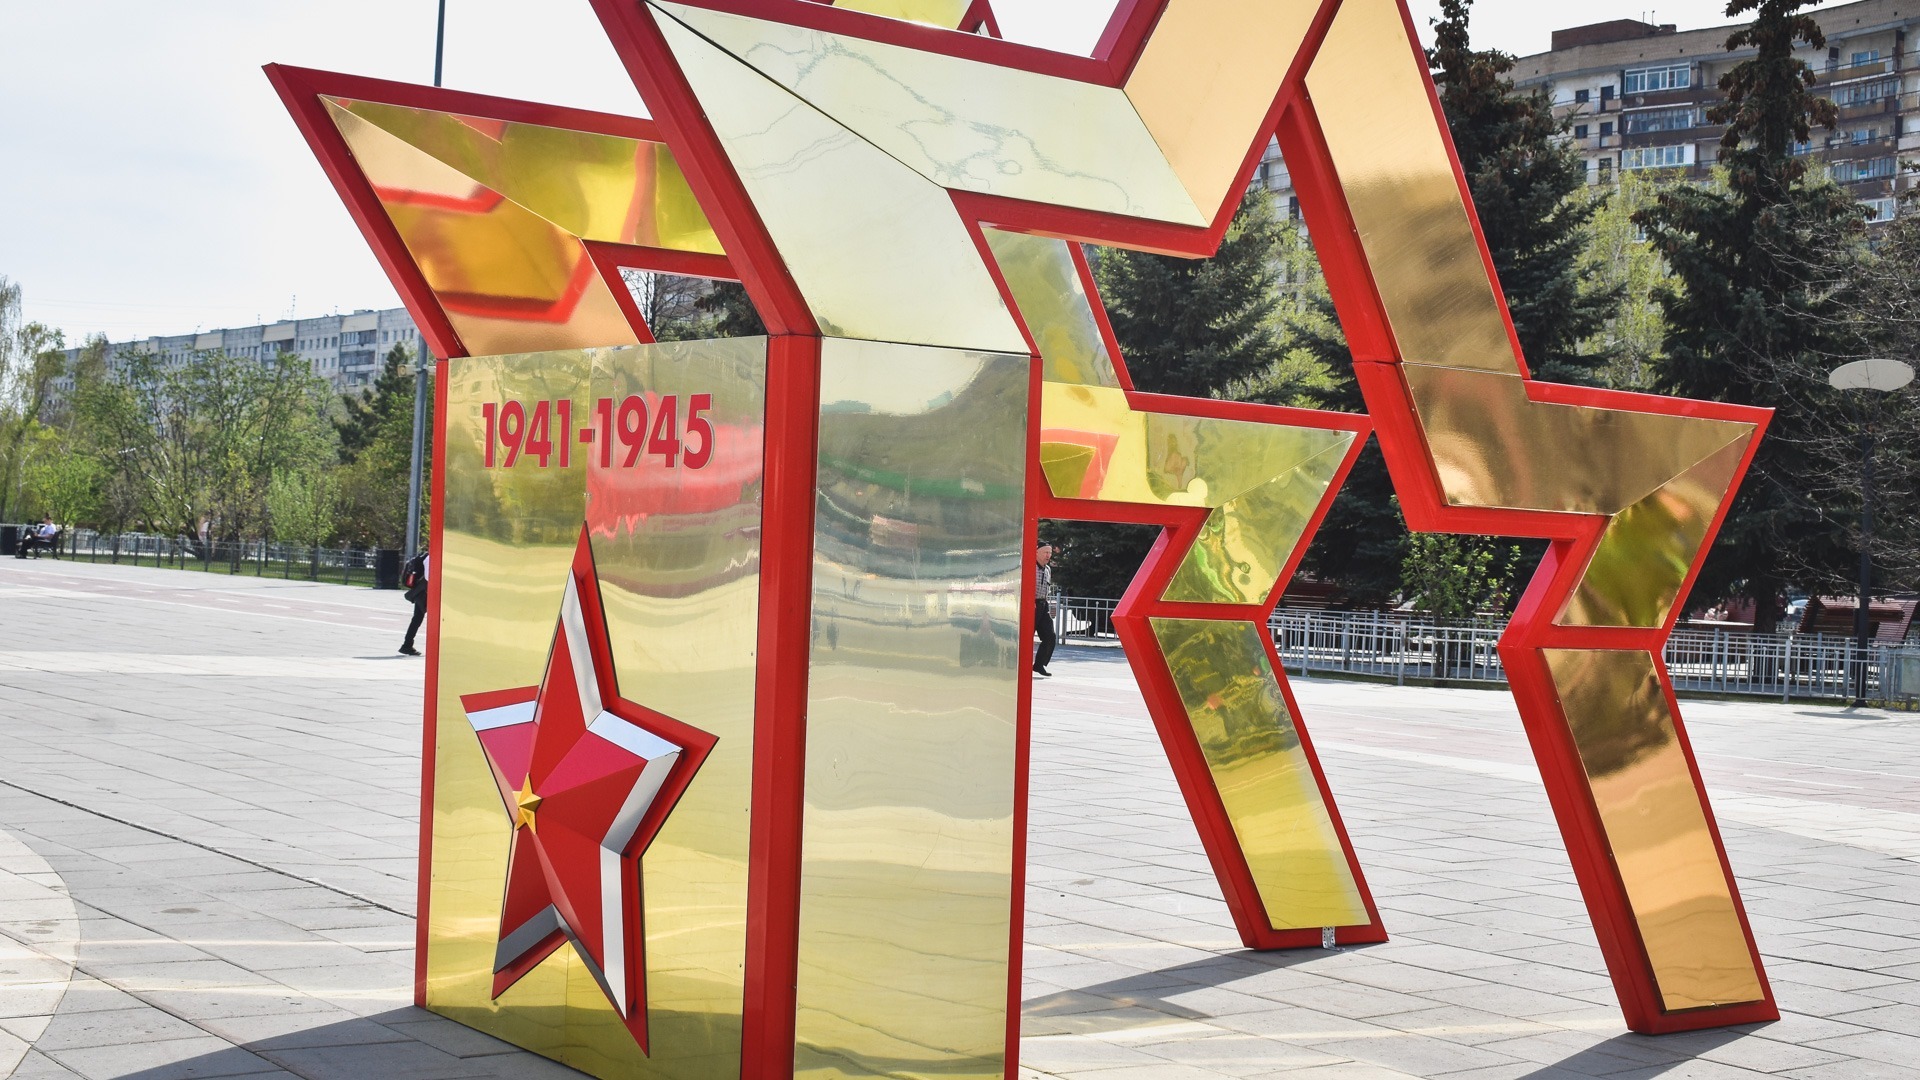 ТЦ во Владивостоке превратился в музыкальную сцену для празднования Дня Победы